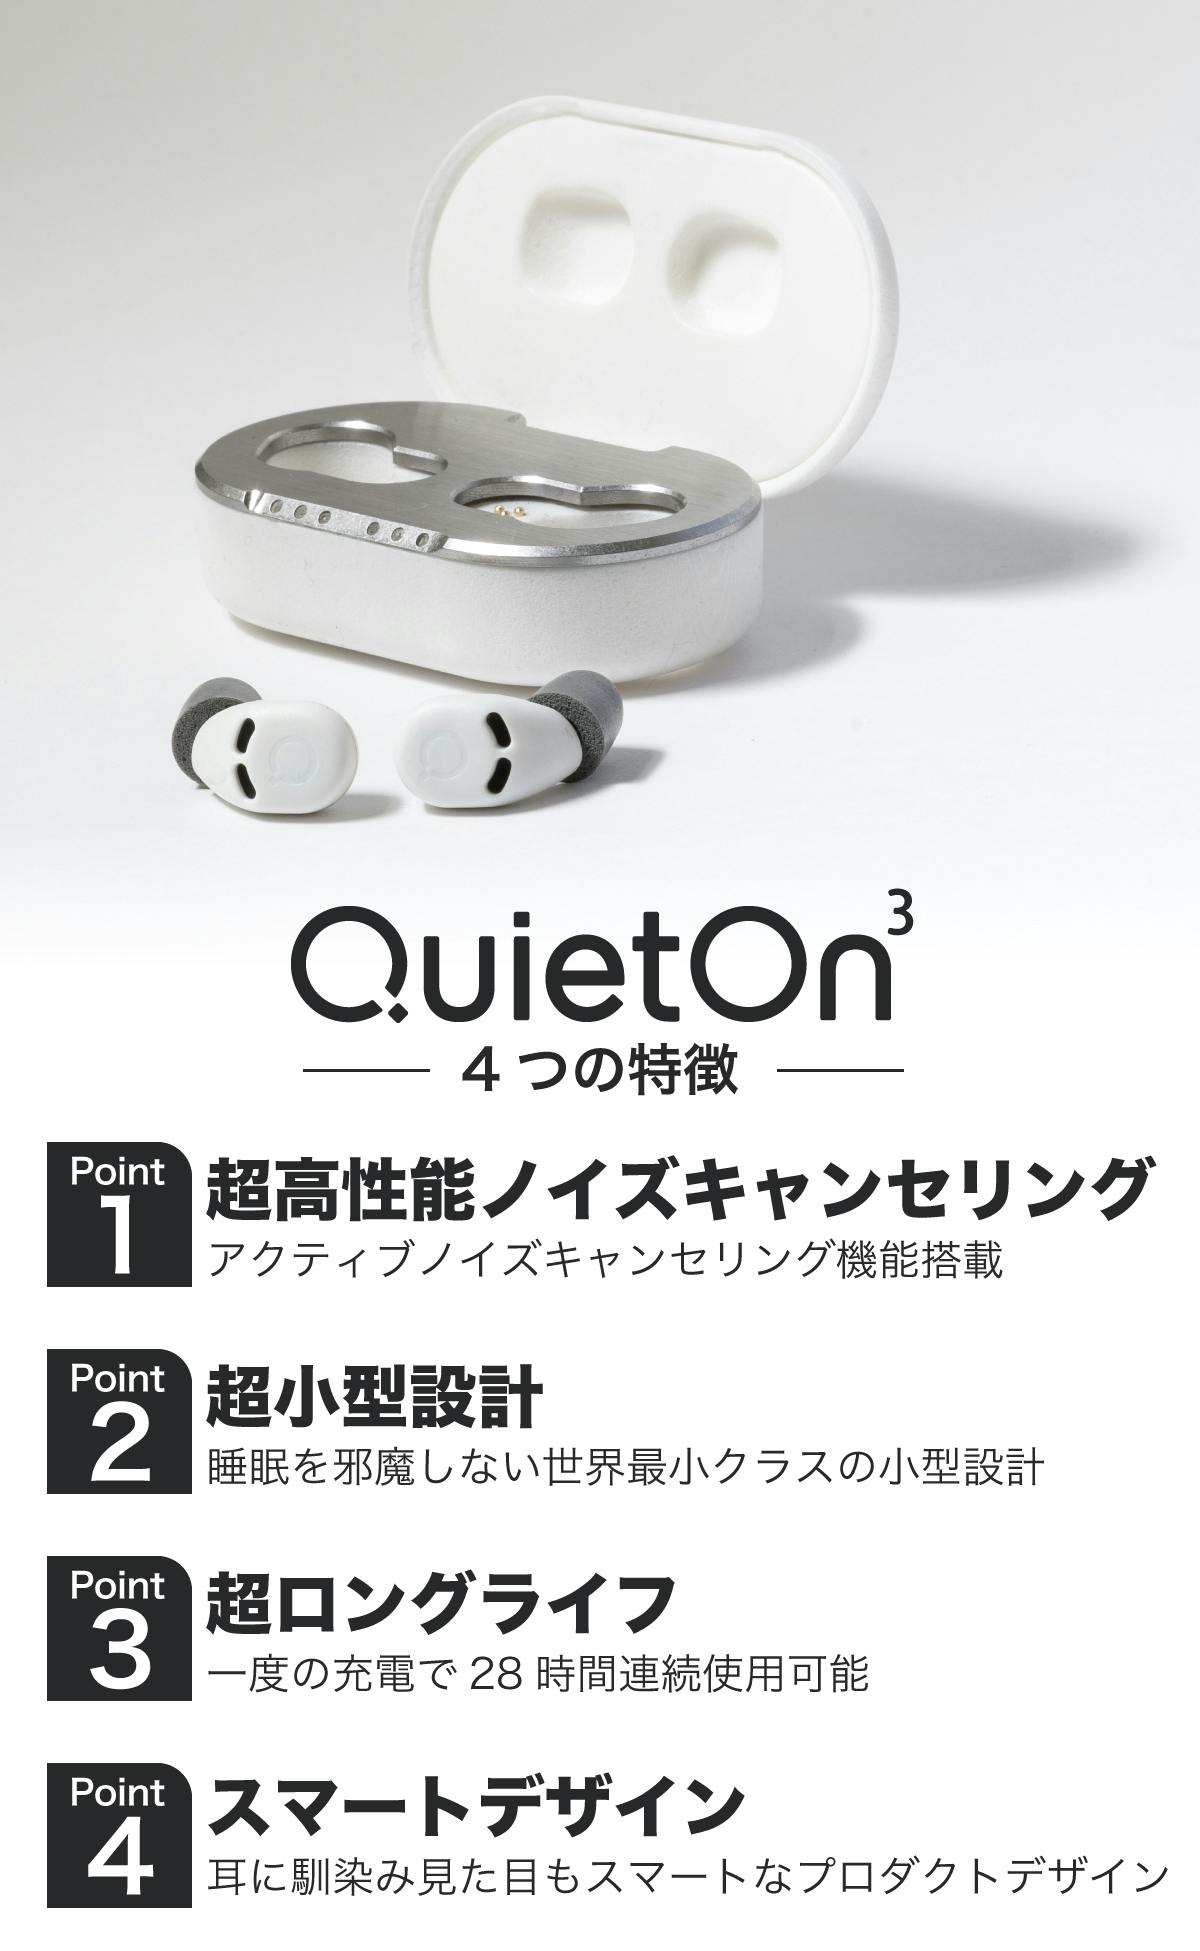 デジタル耳栓】QuietOn Sleep ノイズキャンセリング - オーディオ機器